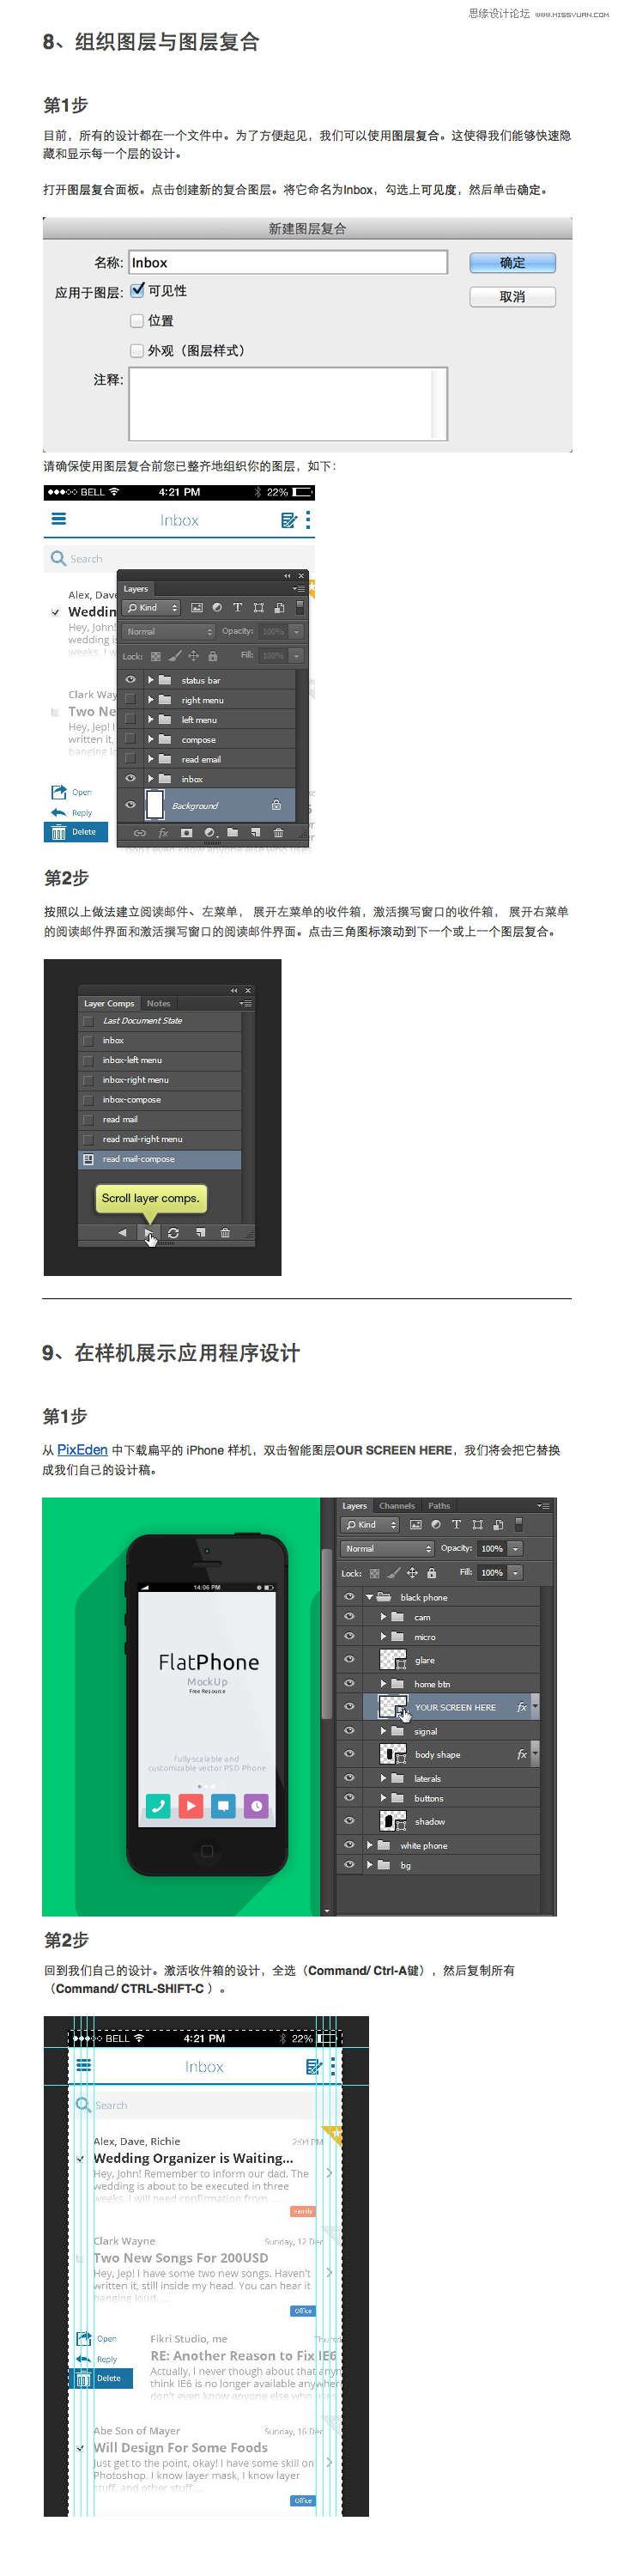 Photoshop教你设计IOS7风格的邮件应用,PS教程,图老师教程网